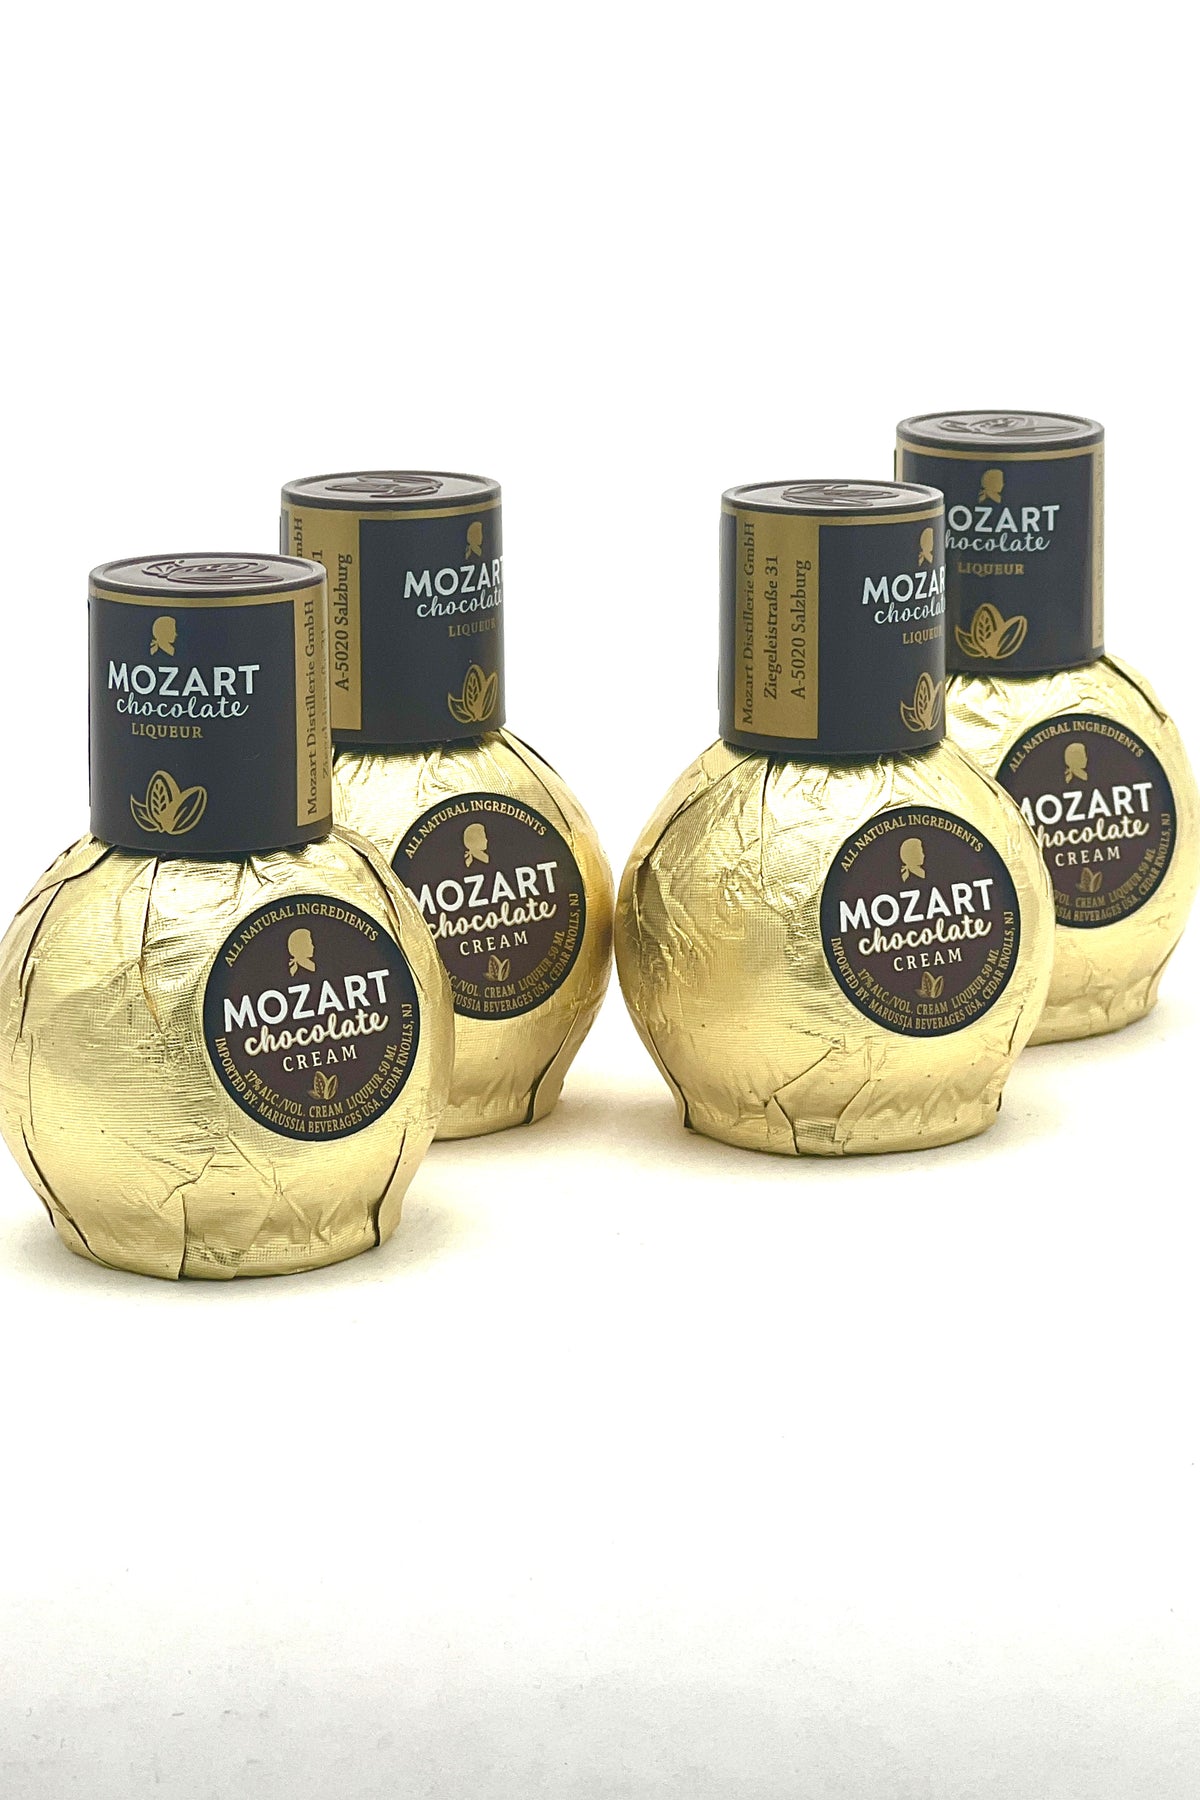 Mozart Chocolate Cream Liqueur 4 x 50 ml